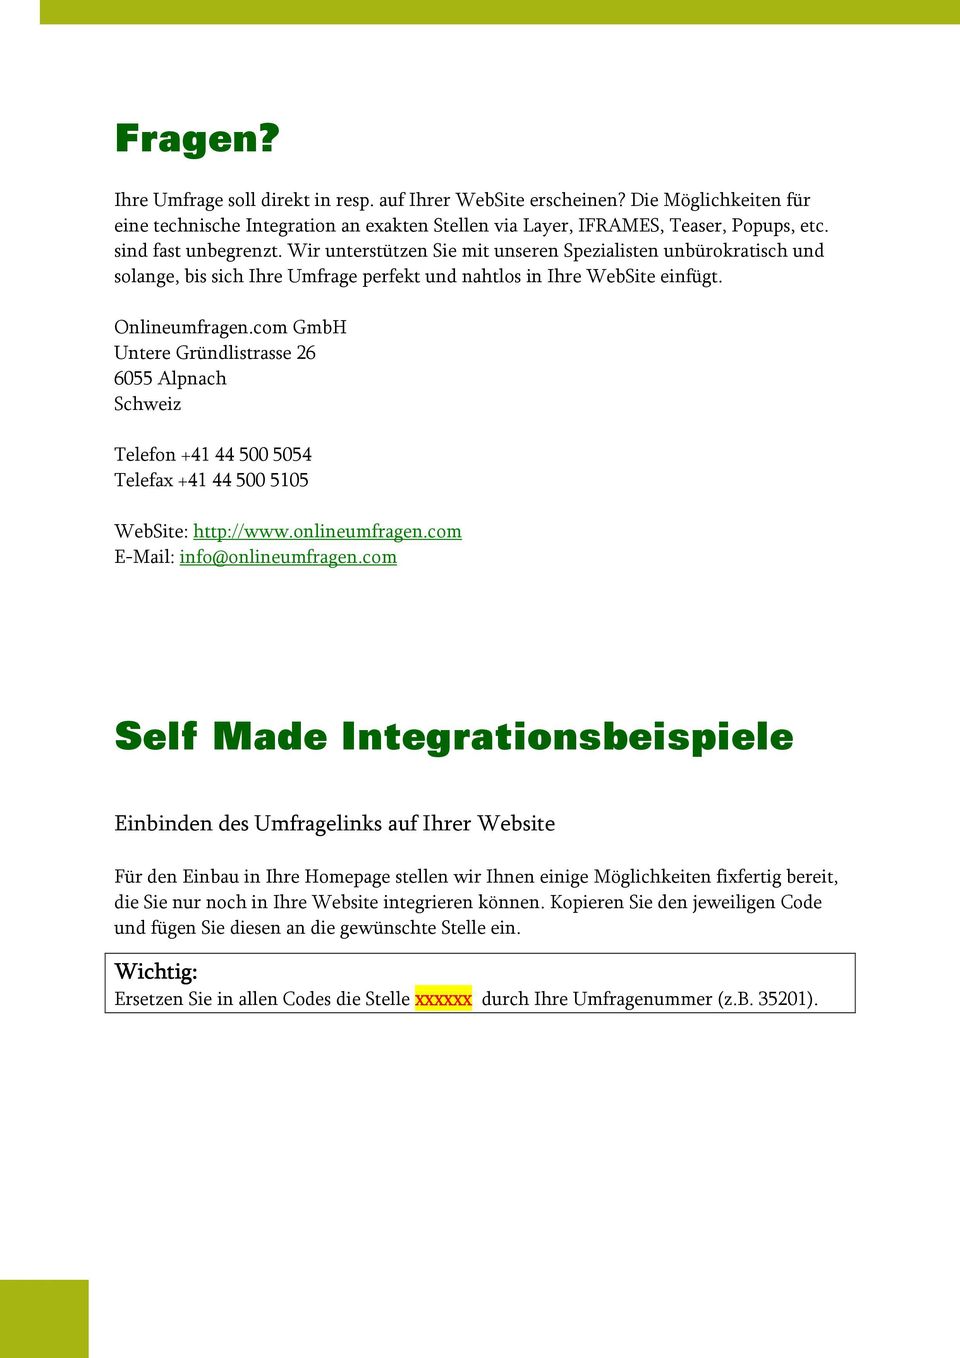 com GmbH Untere Gründlistrasse 26 6055 Alpnach Schweiz Telefon +41 44 500 5054 Telefax +41 44 500 5105 WebSite: http://www.onlineumfragen.com E-Mail: info@onlineumfragen.